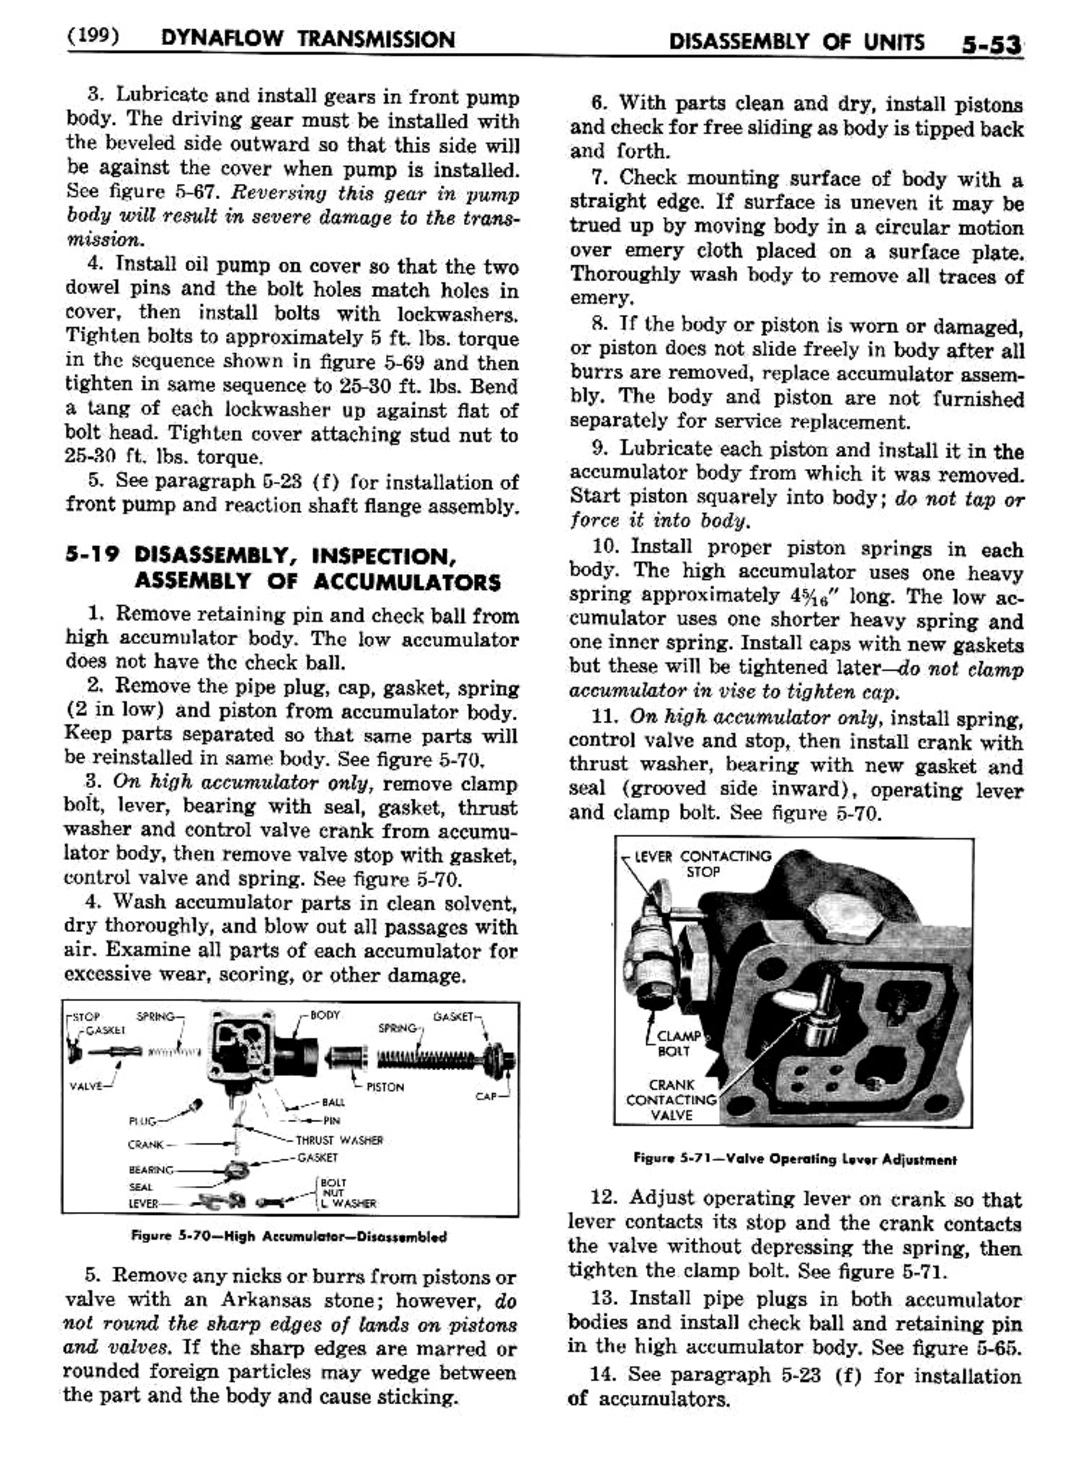 n_06 1956 Buick Shop Manual - Dynaflow-053-053.jpg